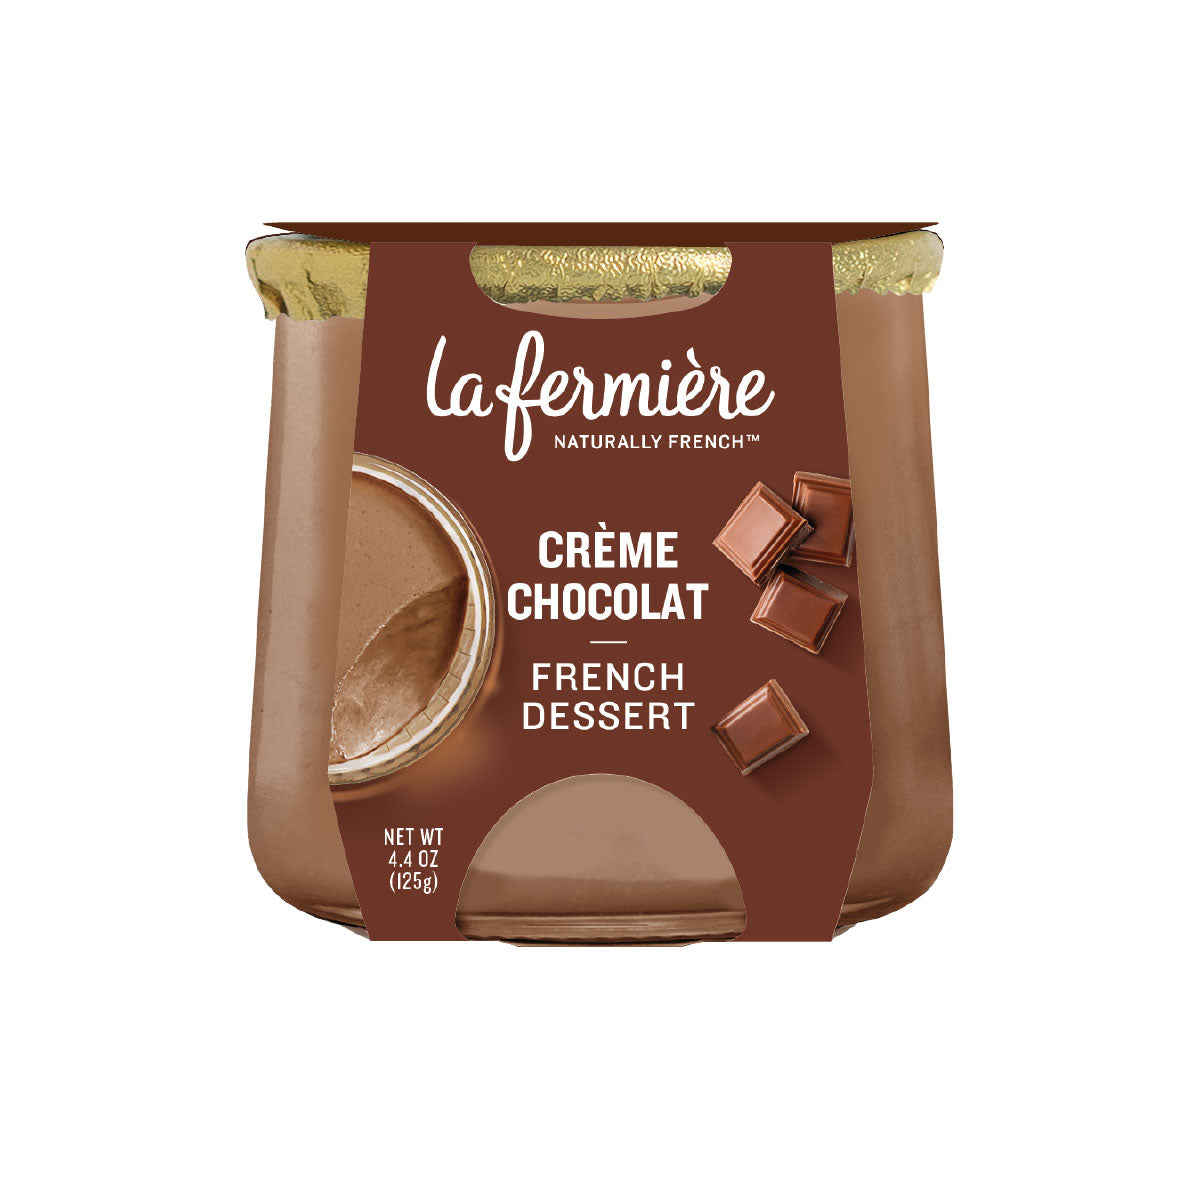 La Fermiére Crème Chocolate French Dessert 4.4 OZ